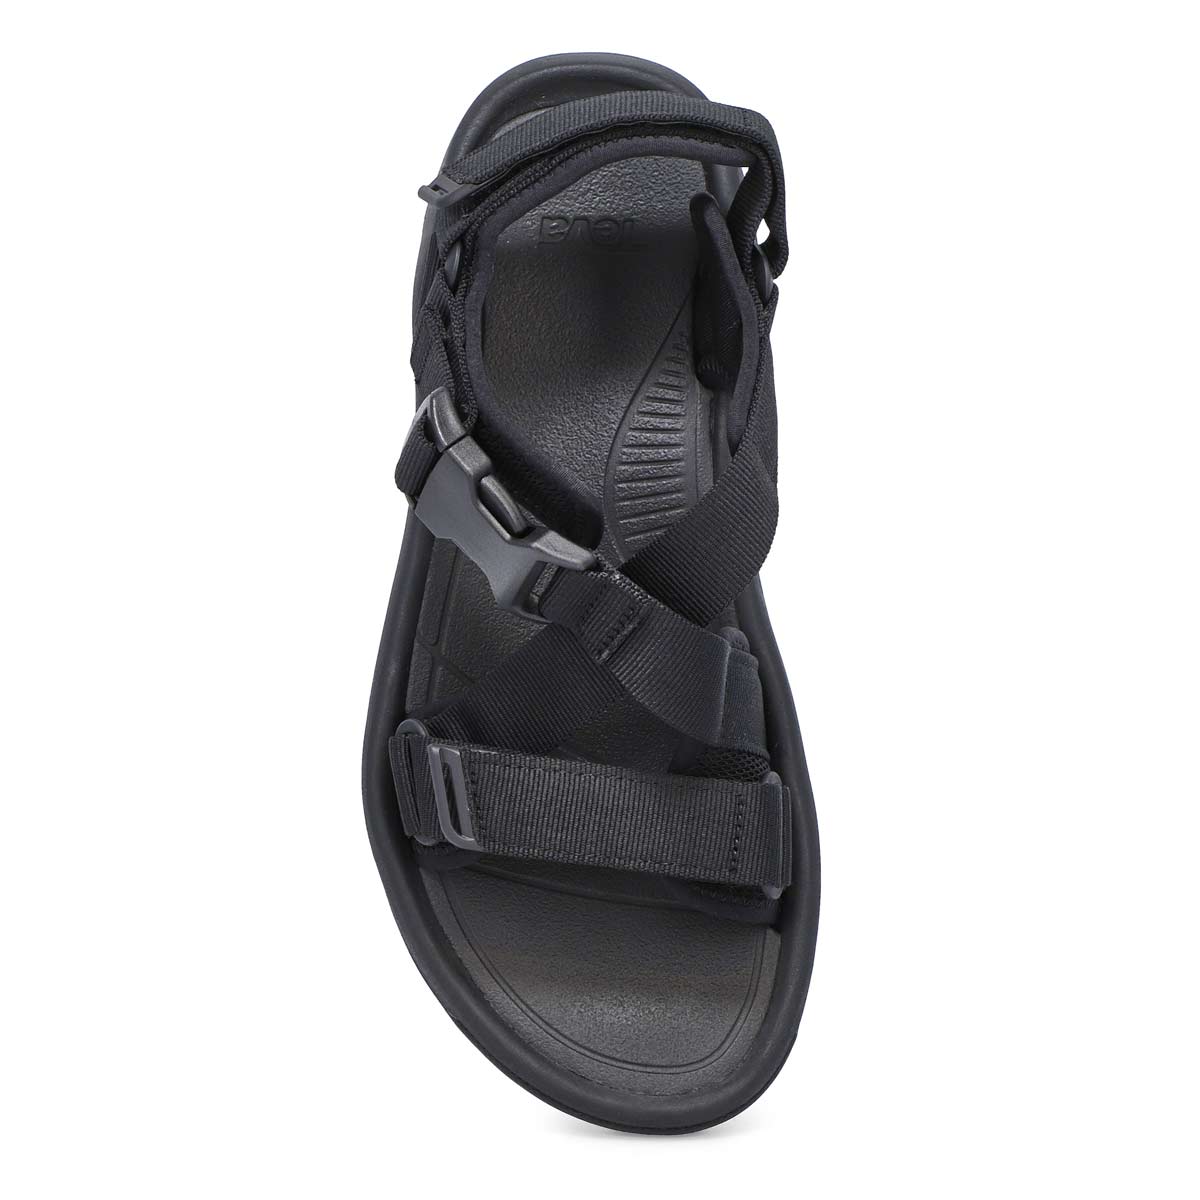 Men's Hurricane Verge Sport Sandal - Black